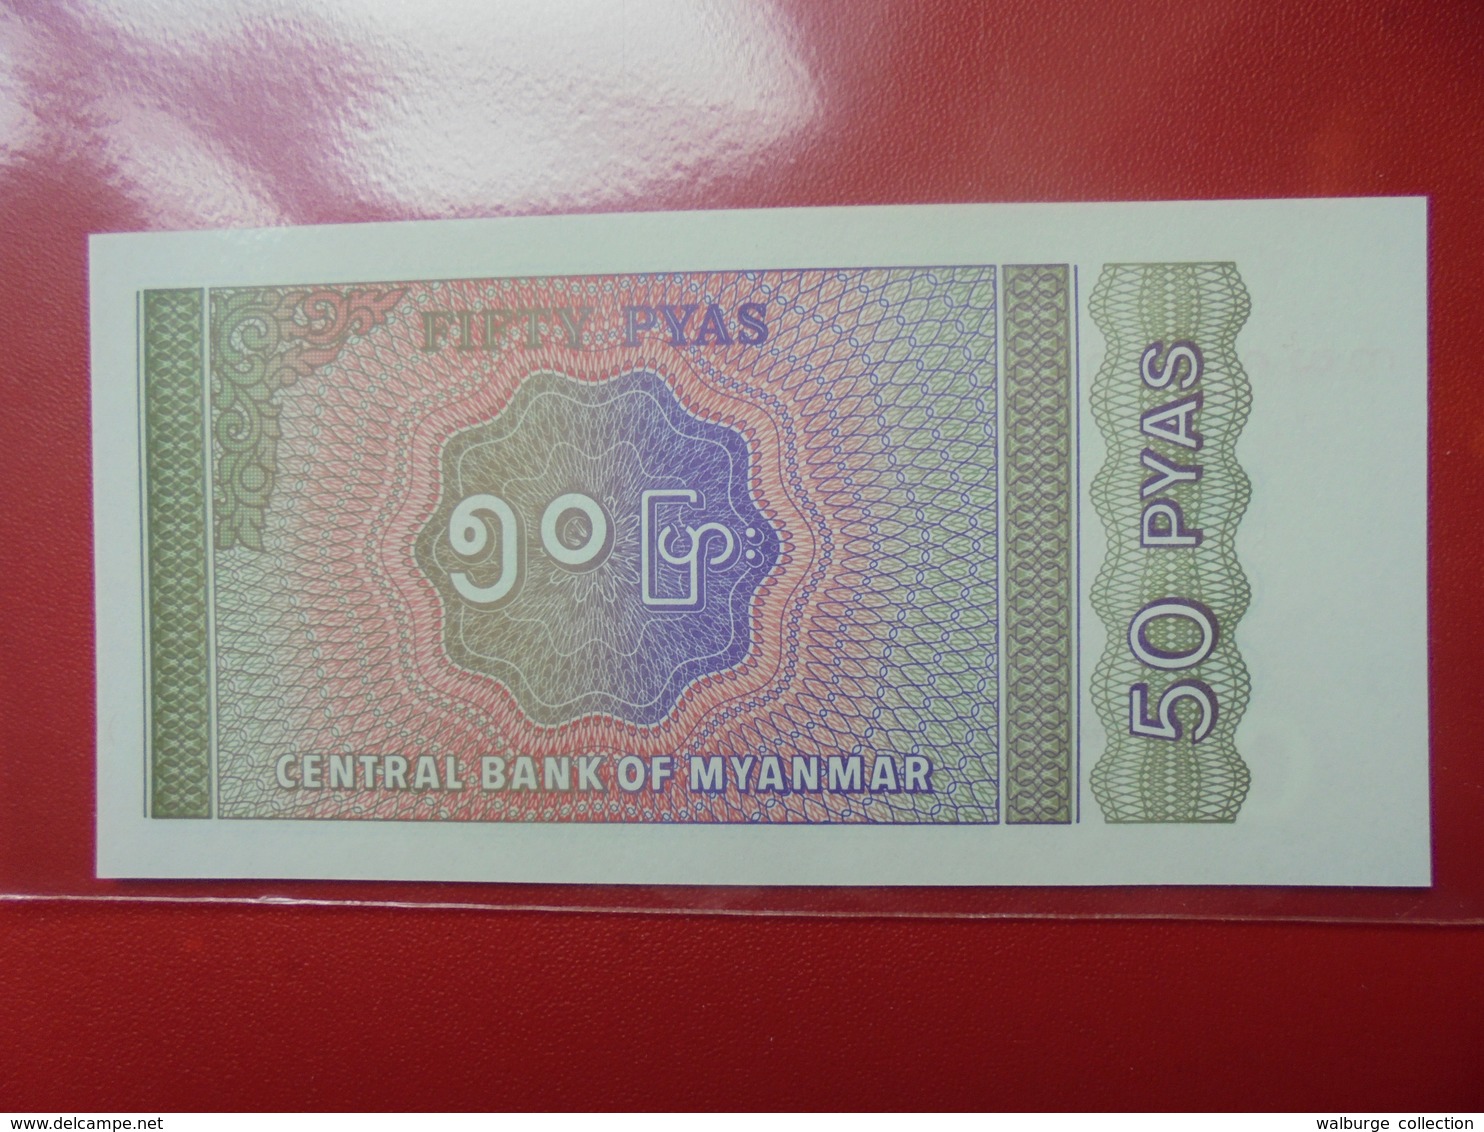 MYANMAR 50 PYAS 1994 PEU CIRCULER/NEUF - Myanmar